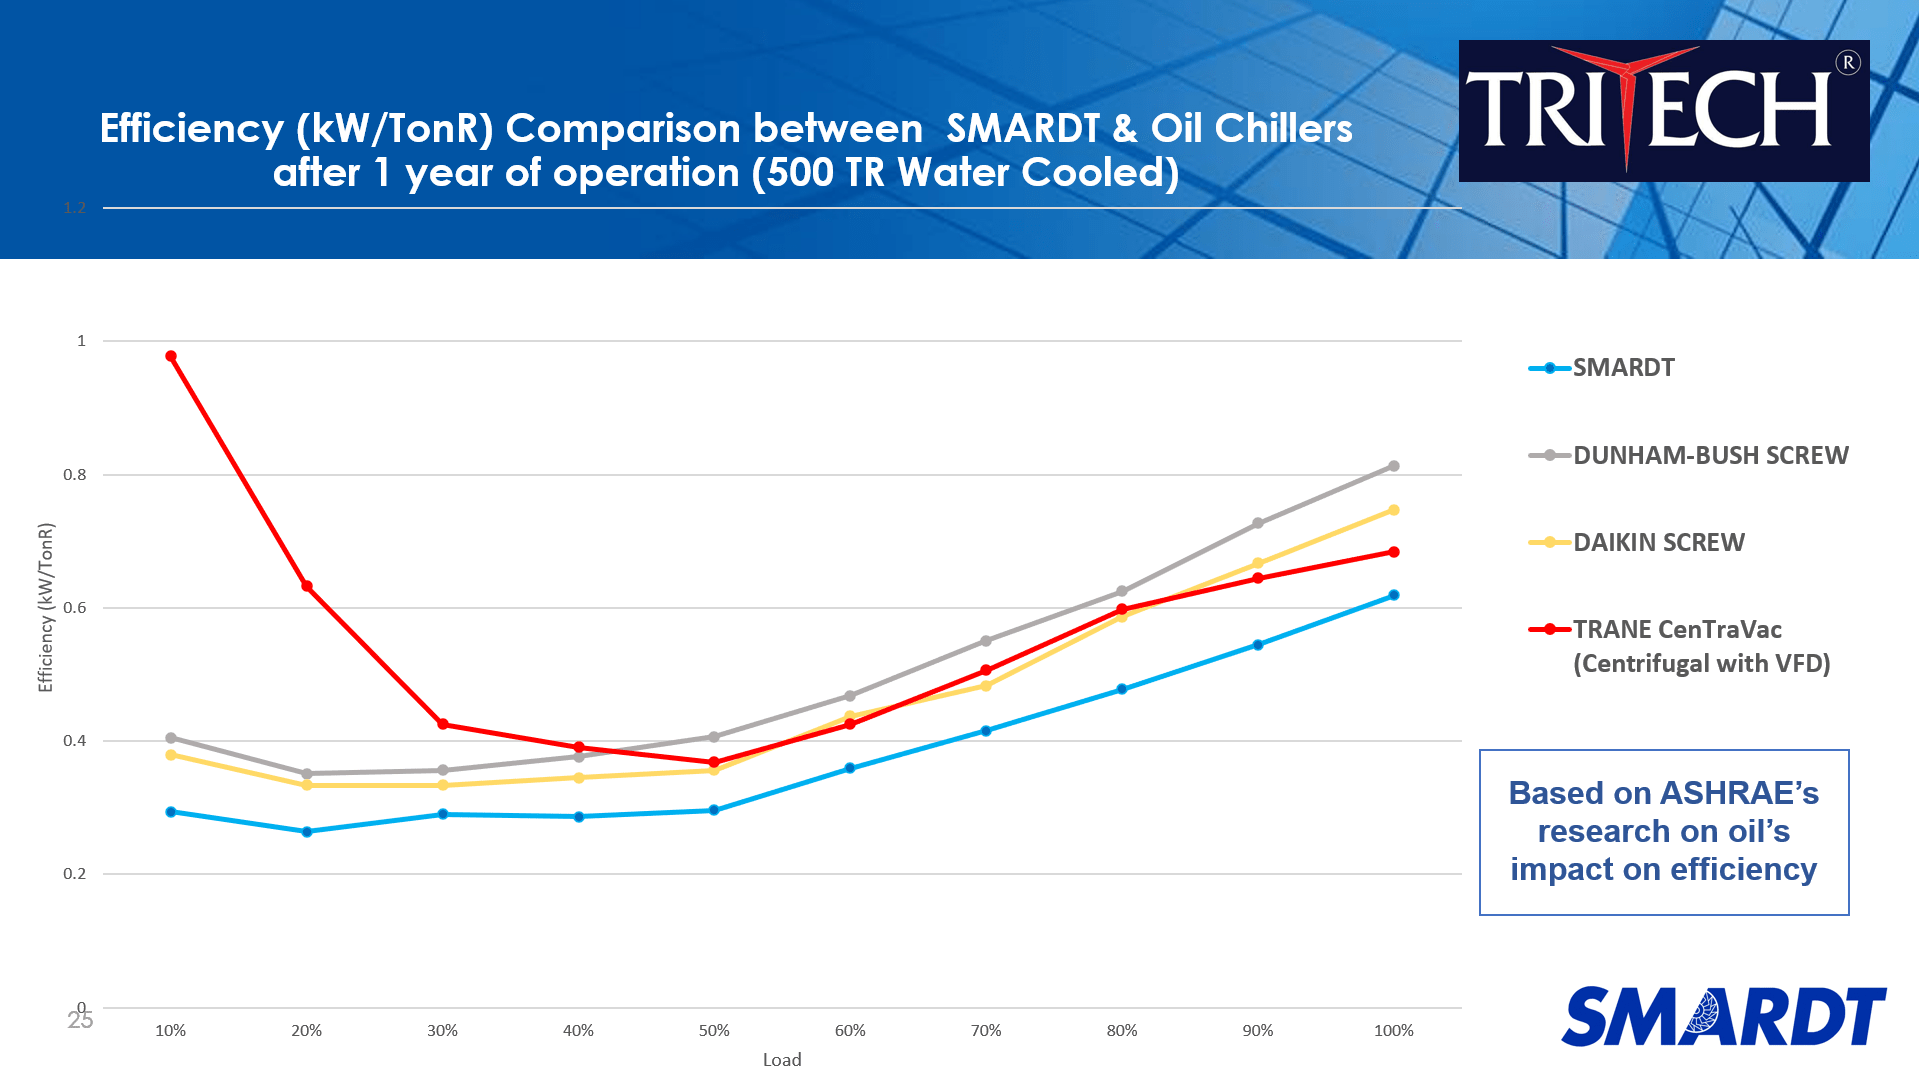 Efficiency between SMARDT & Oil Chillers